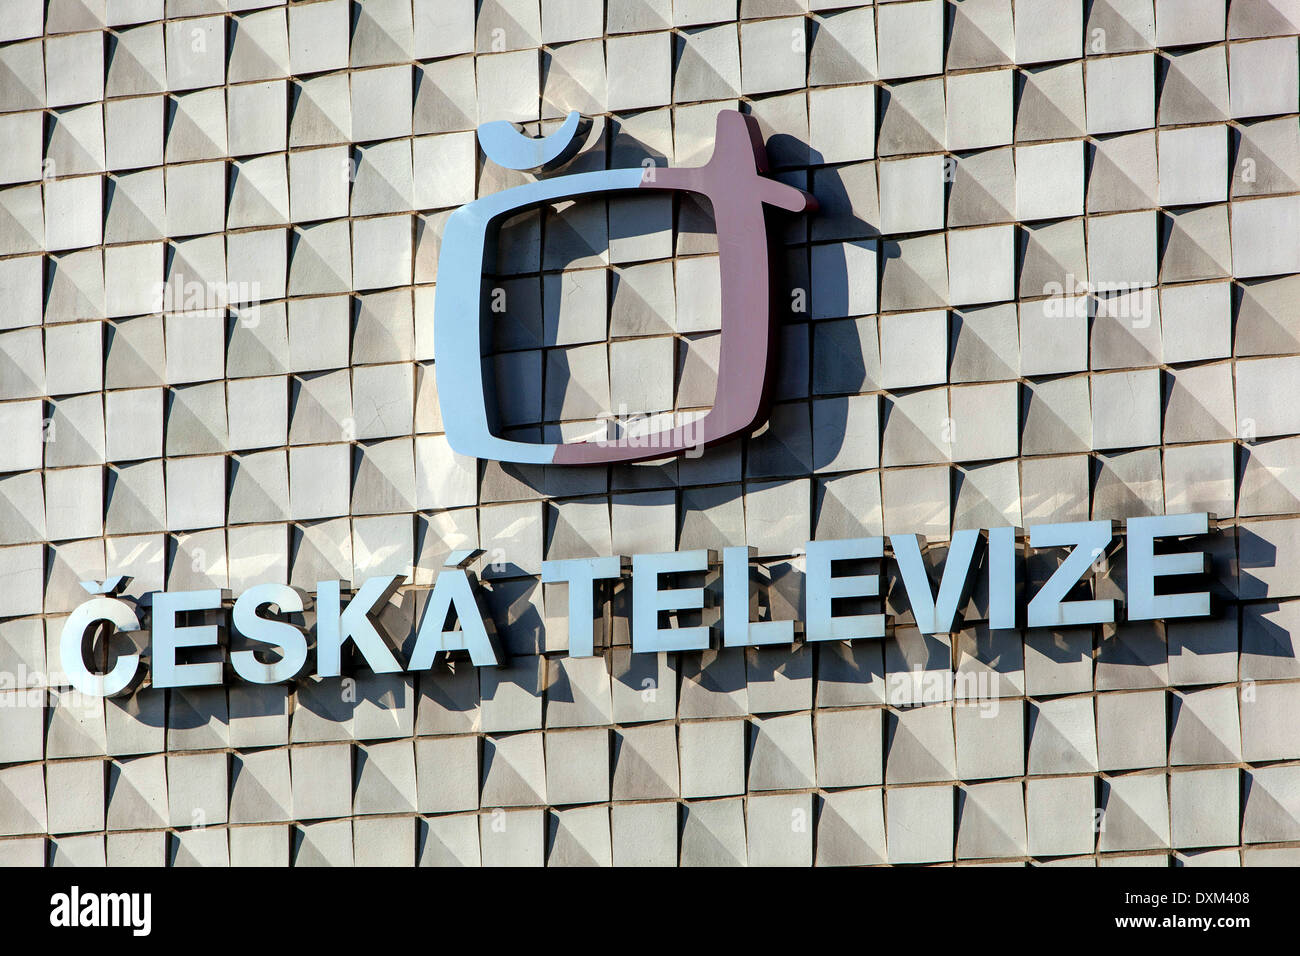 Ceska Televize Czech TV logo Czech Republic Stock Photo - Alamy